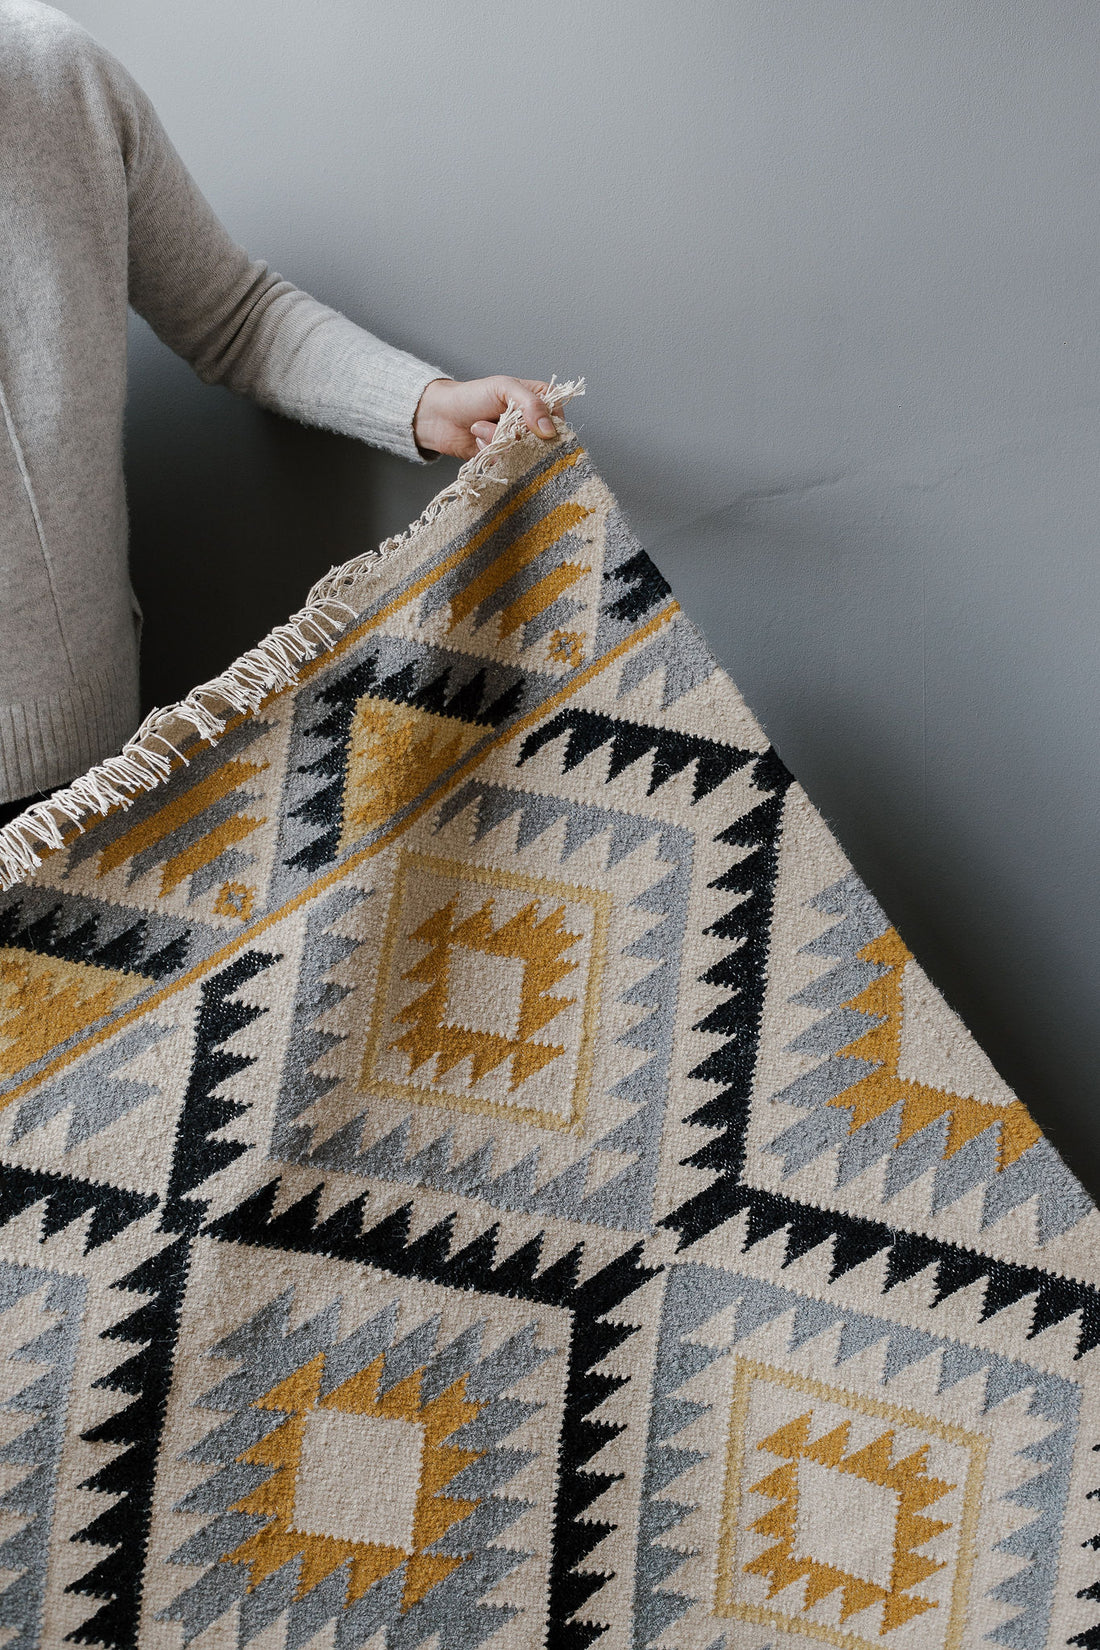 Handmade kilim rug collection